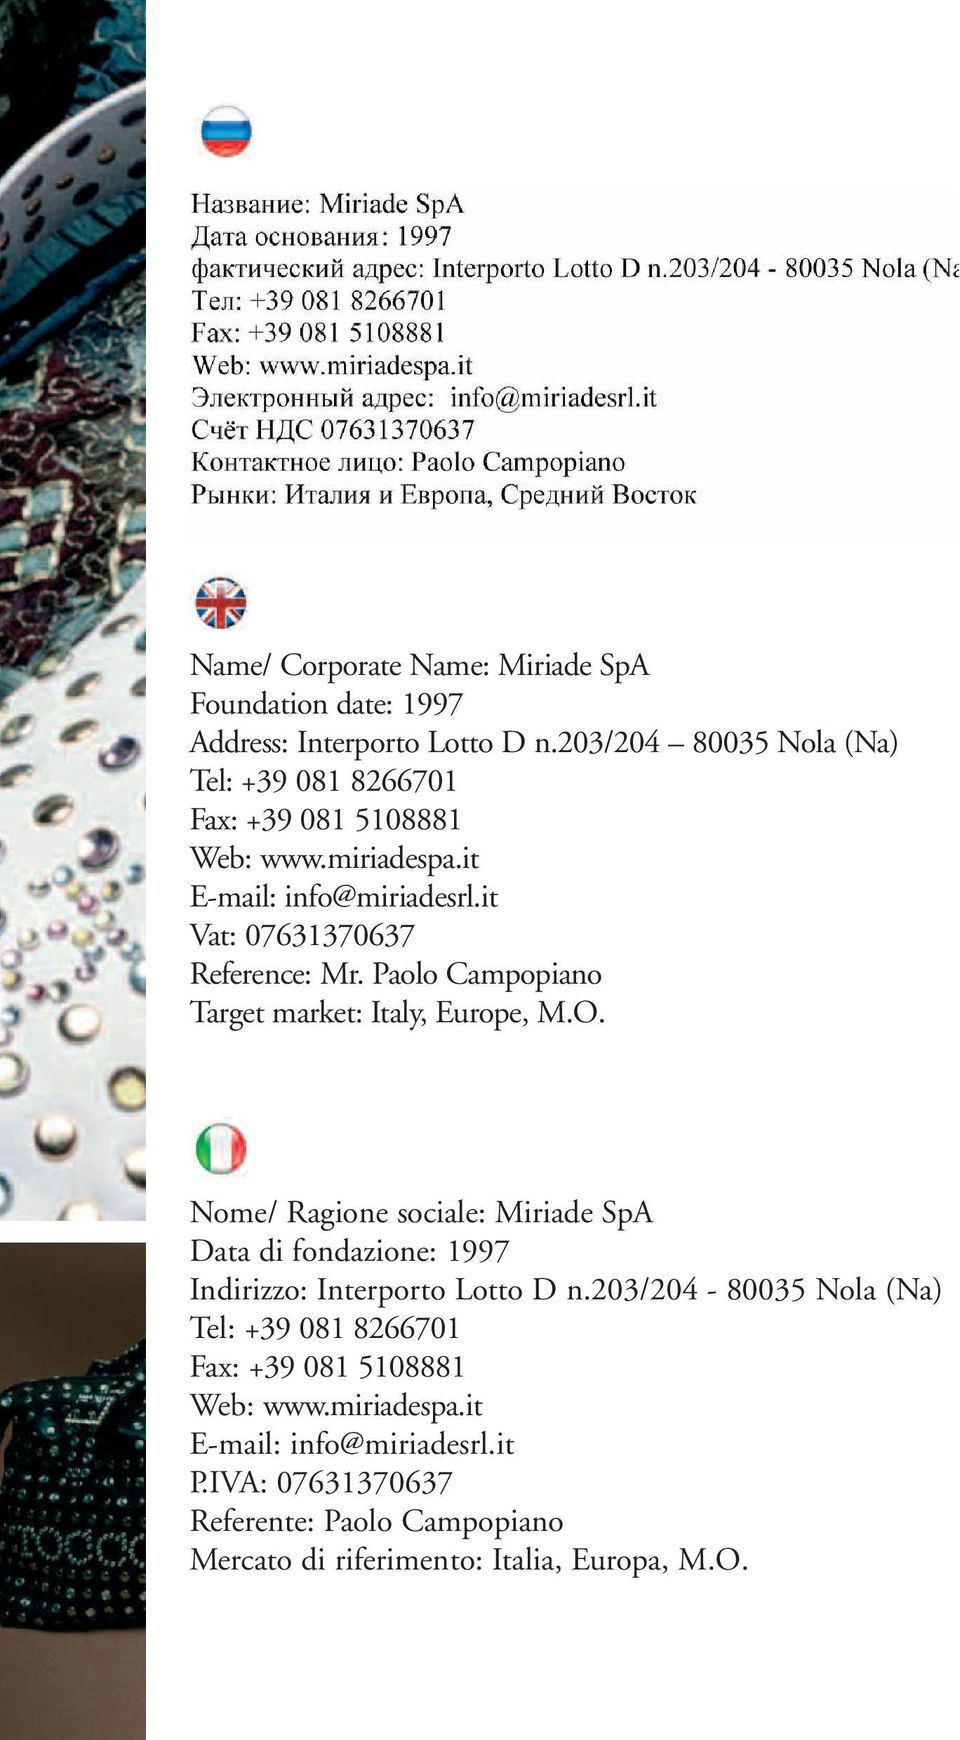 Paolo Campopiano Target market: Italy, Europe, M.O. Nome/ Ragione sociale: Miriade SpA Data di fondazione: 1997 Indirizzo: Interporto Lotto D n.